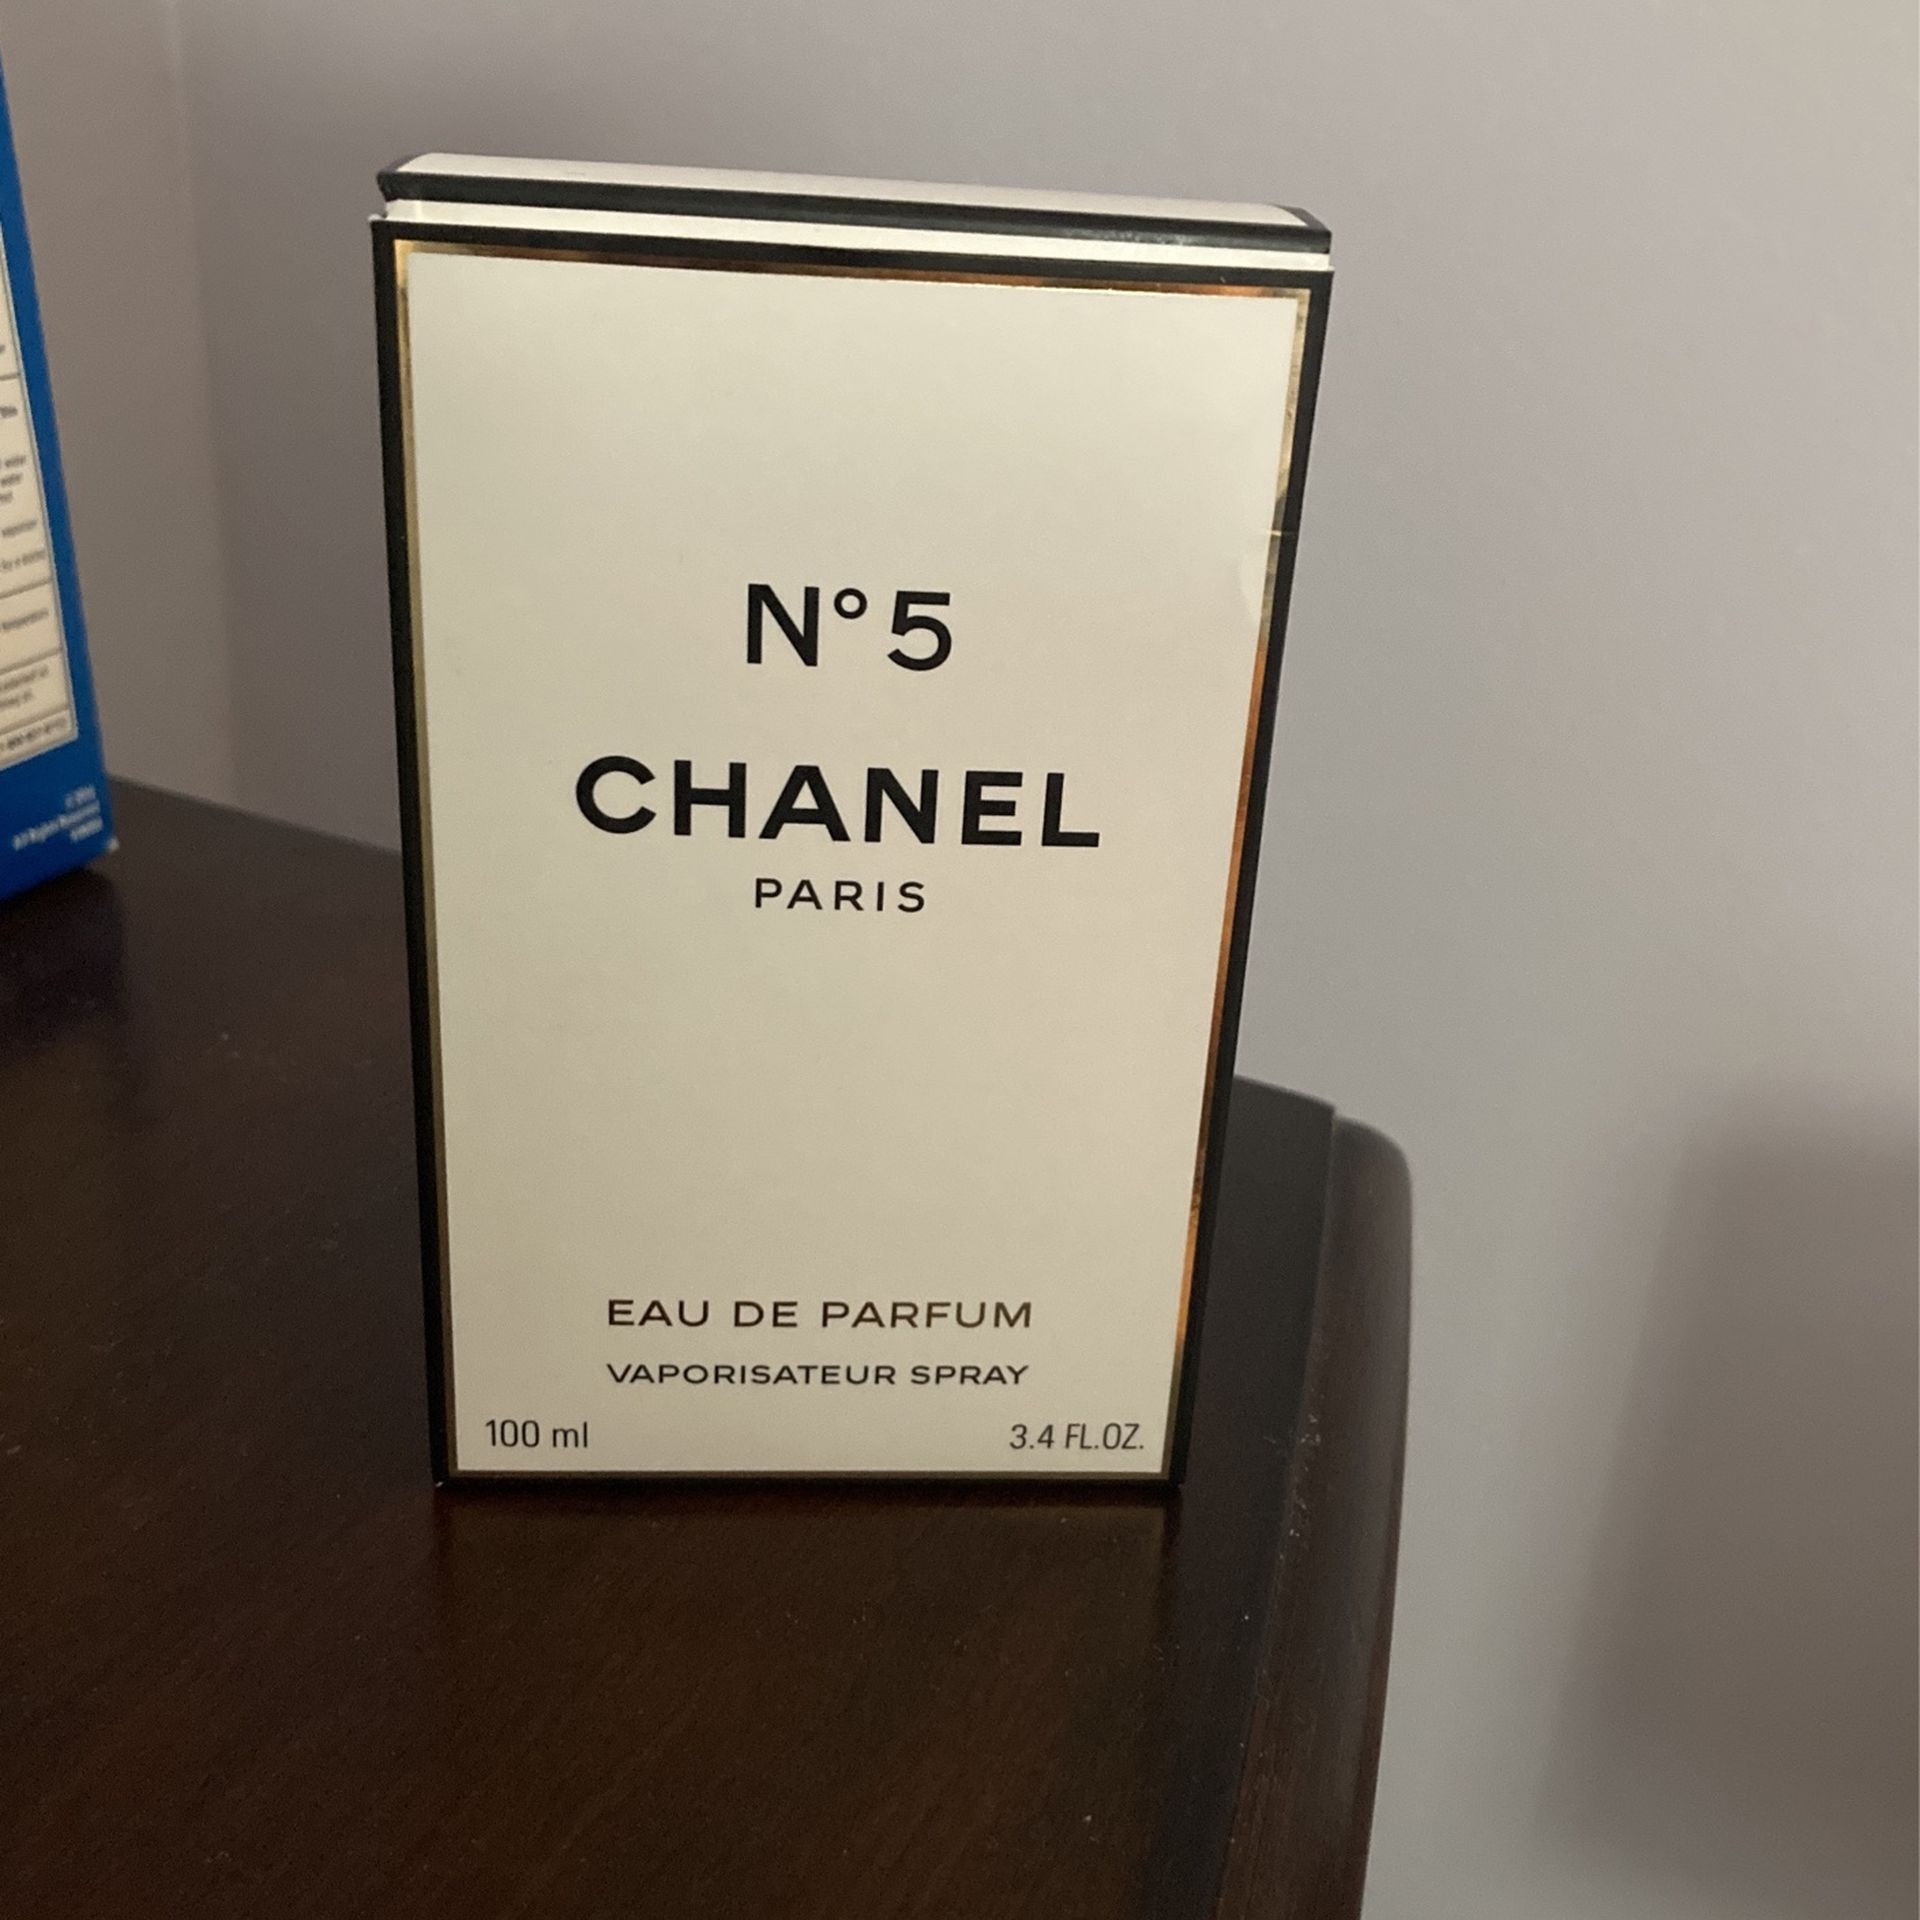 Chanel Paris No 5 Eau De Parfum (Perfume)